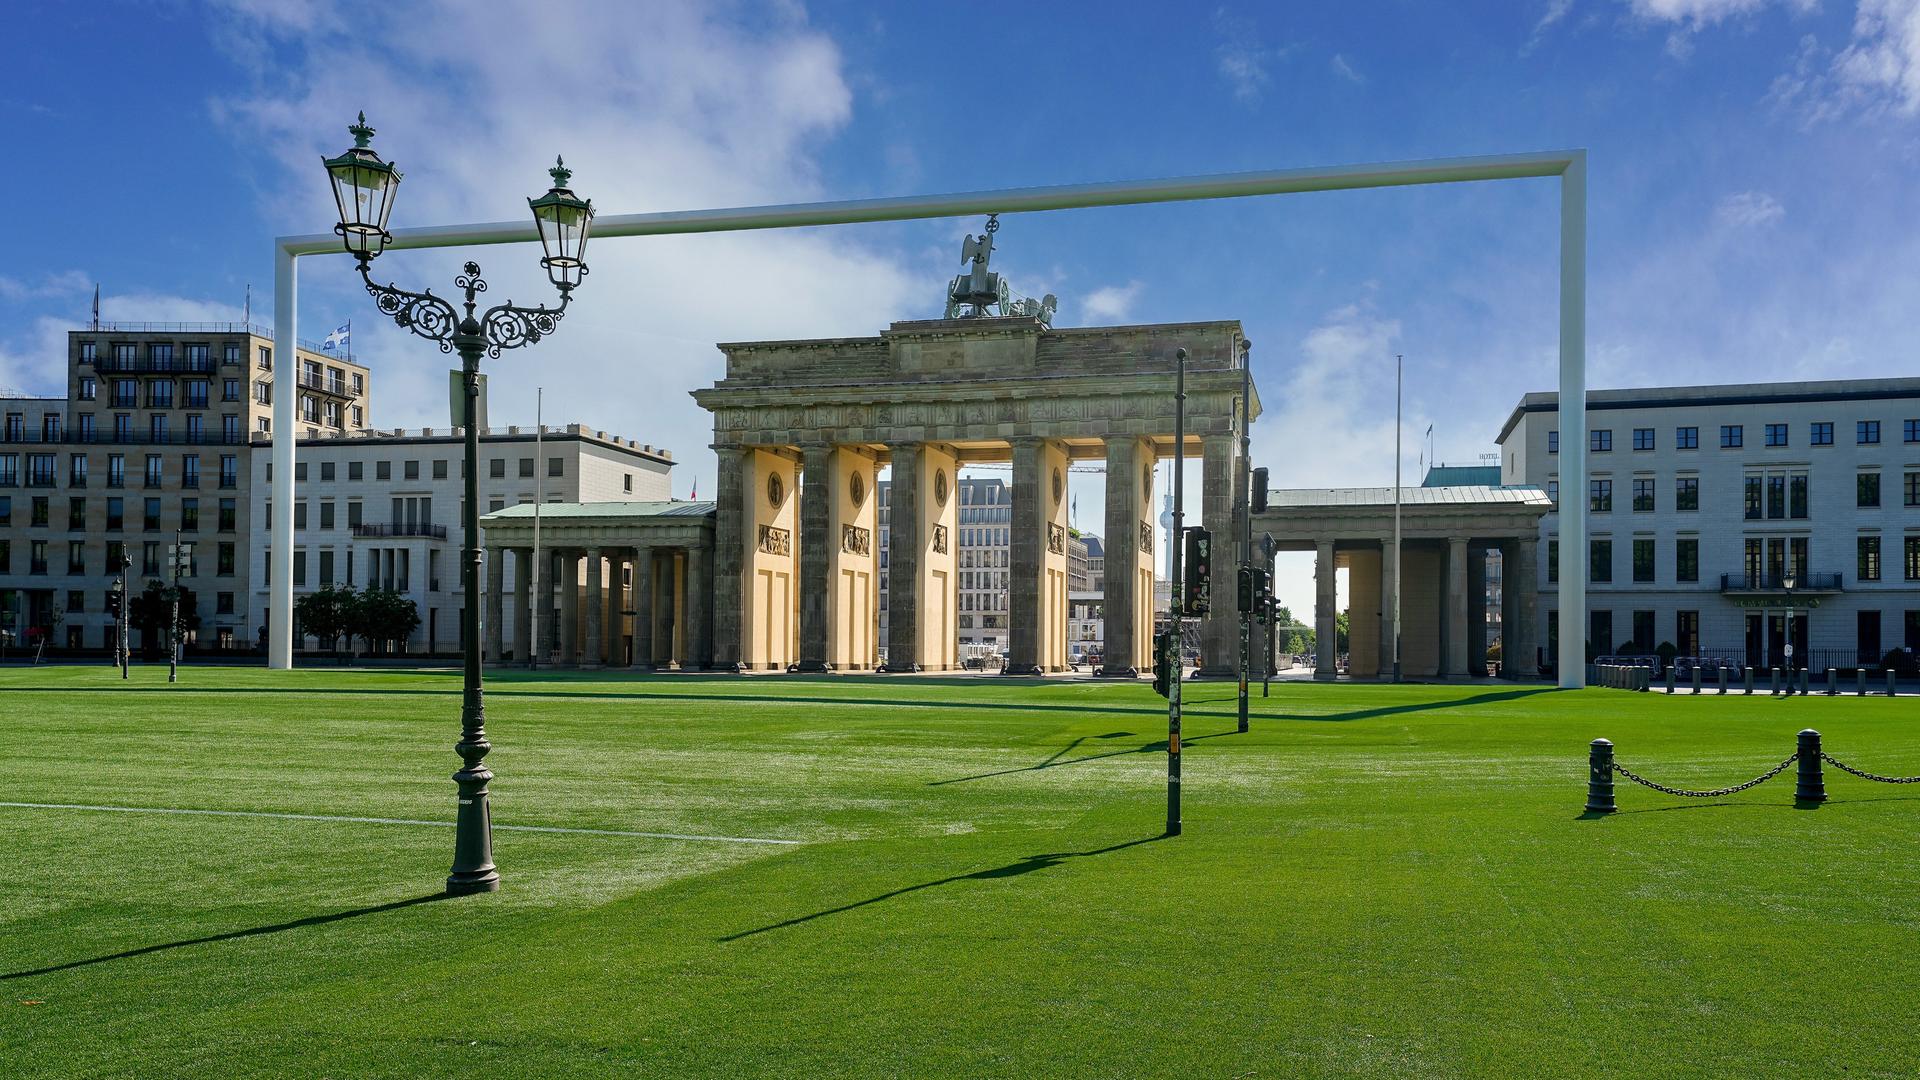 Vor dem Brandenburger Tor in Berlin ist ein riesiges Fußballtor aufgebaut, sowie ein Kunstrasen verlegt.